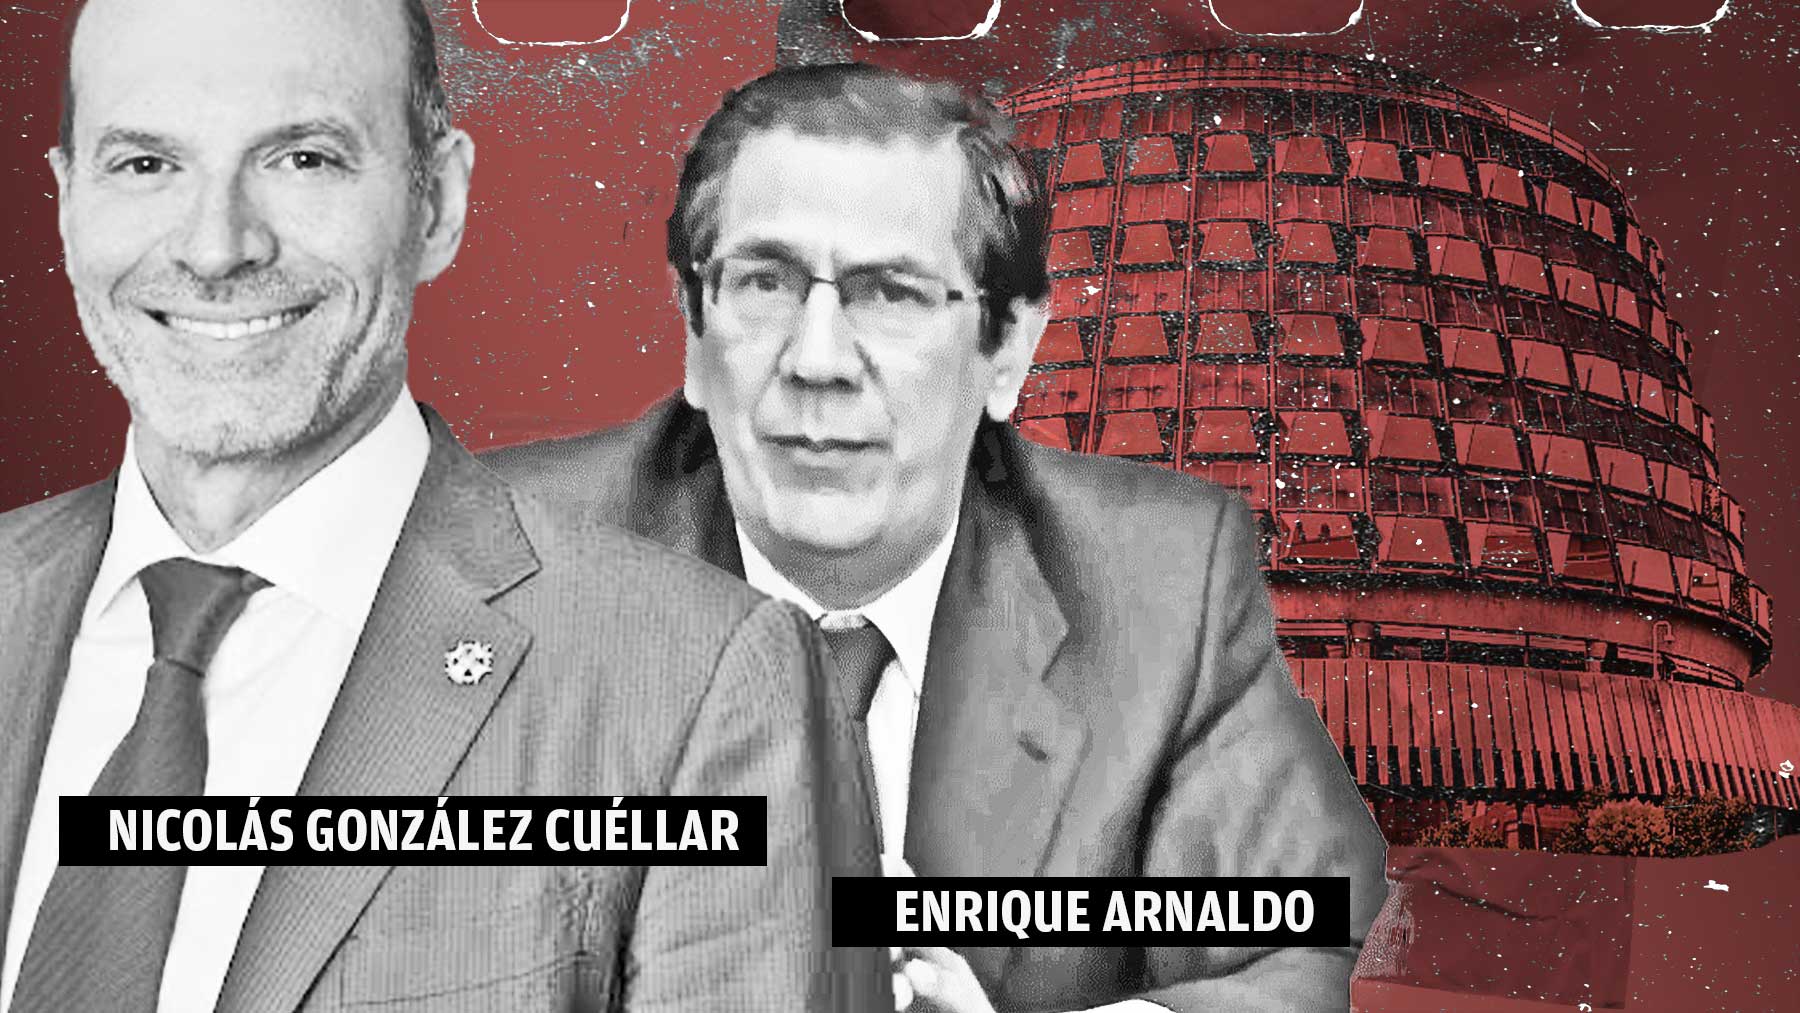 Nicolás González Cuéllar y Enrique Arnaldo.